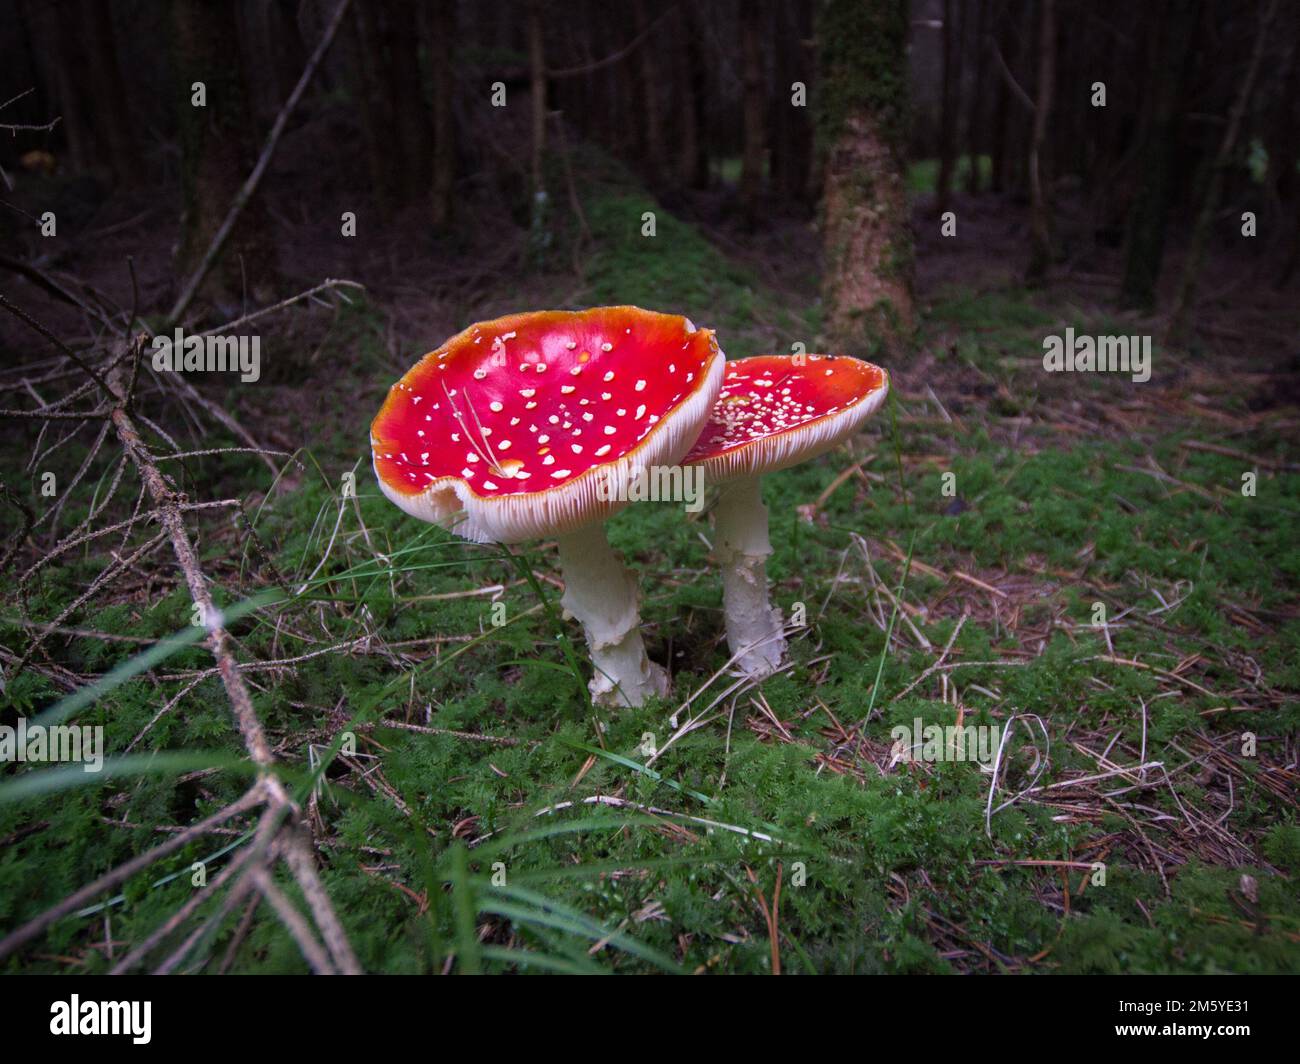 Un cliché horizontal de deux champignons rouges avec des taches blanches sur eux et des pattes blanches dans un champ vert Banque D'Images